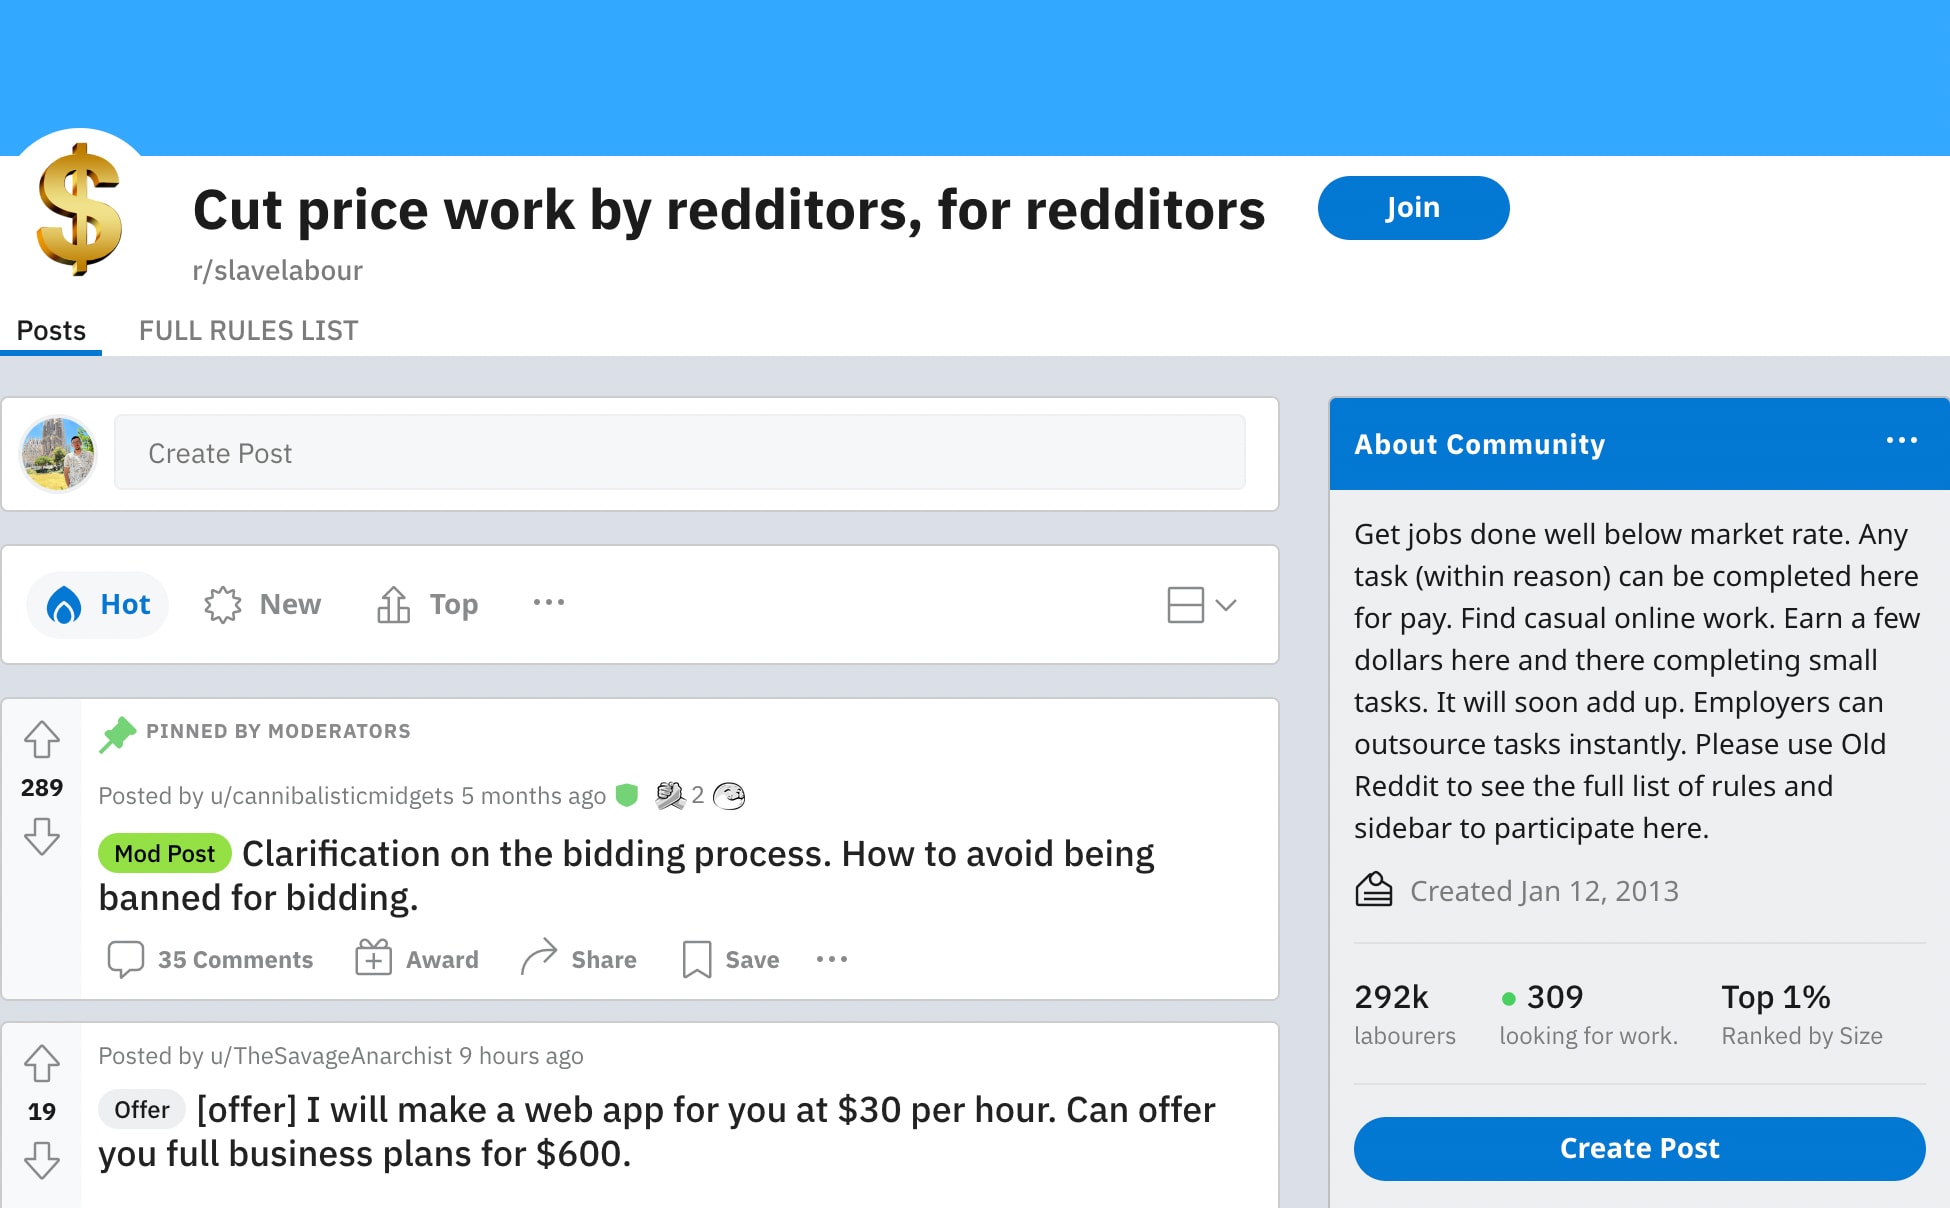 complete tasks for pay on reddit